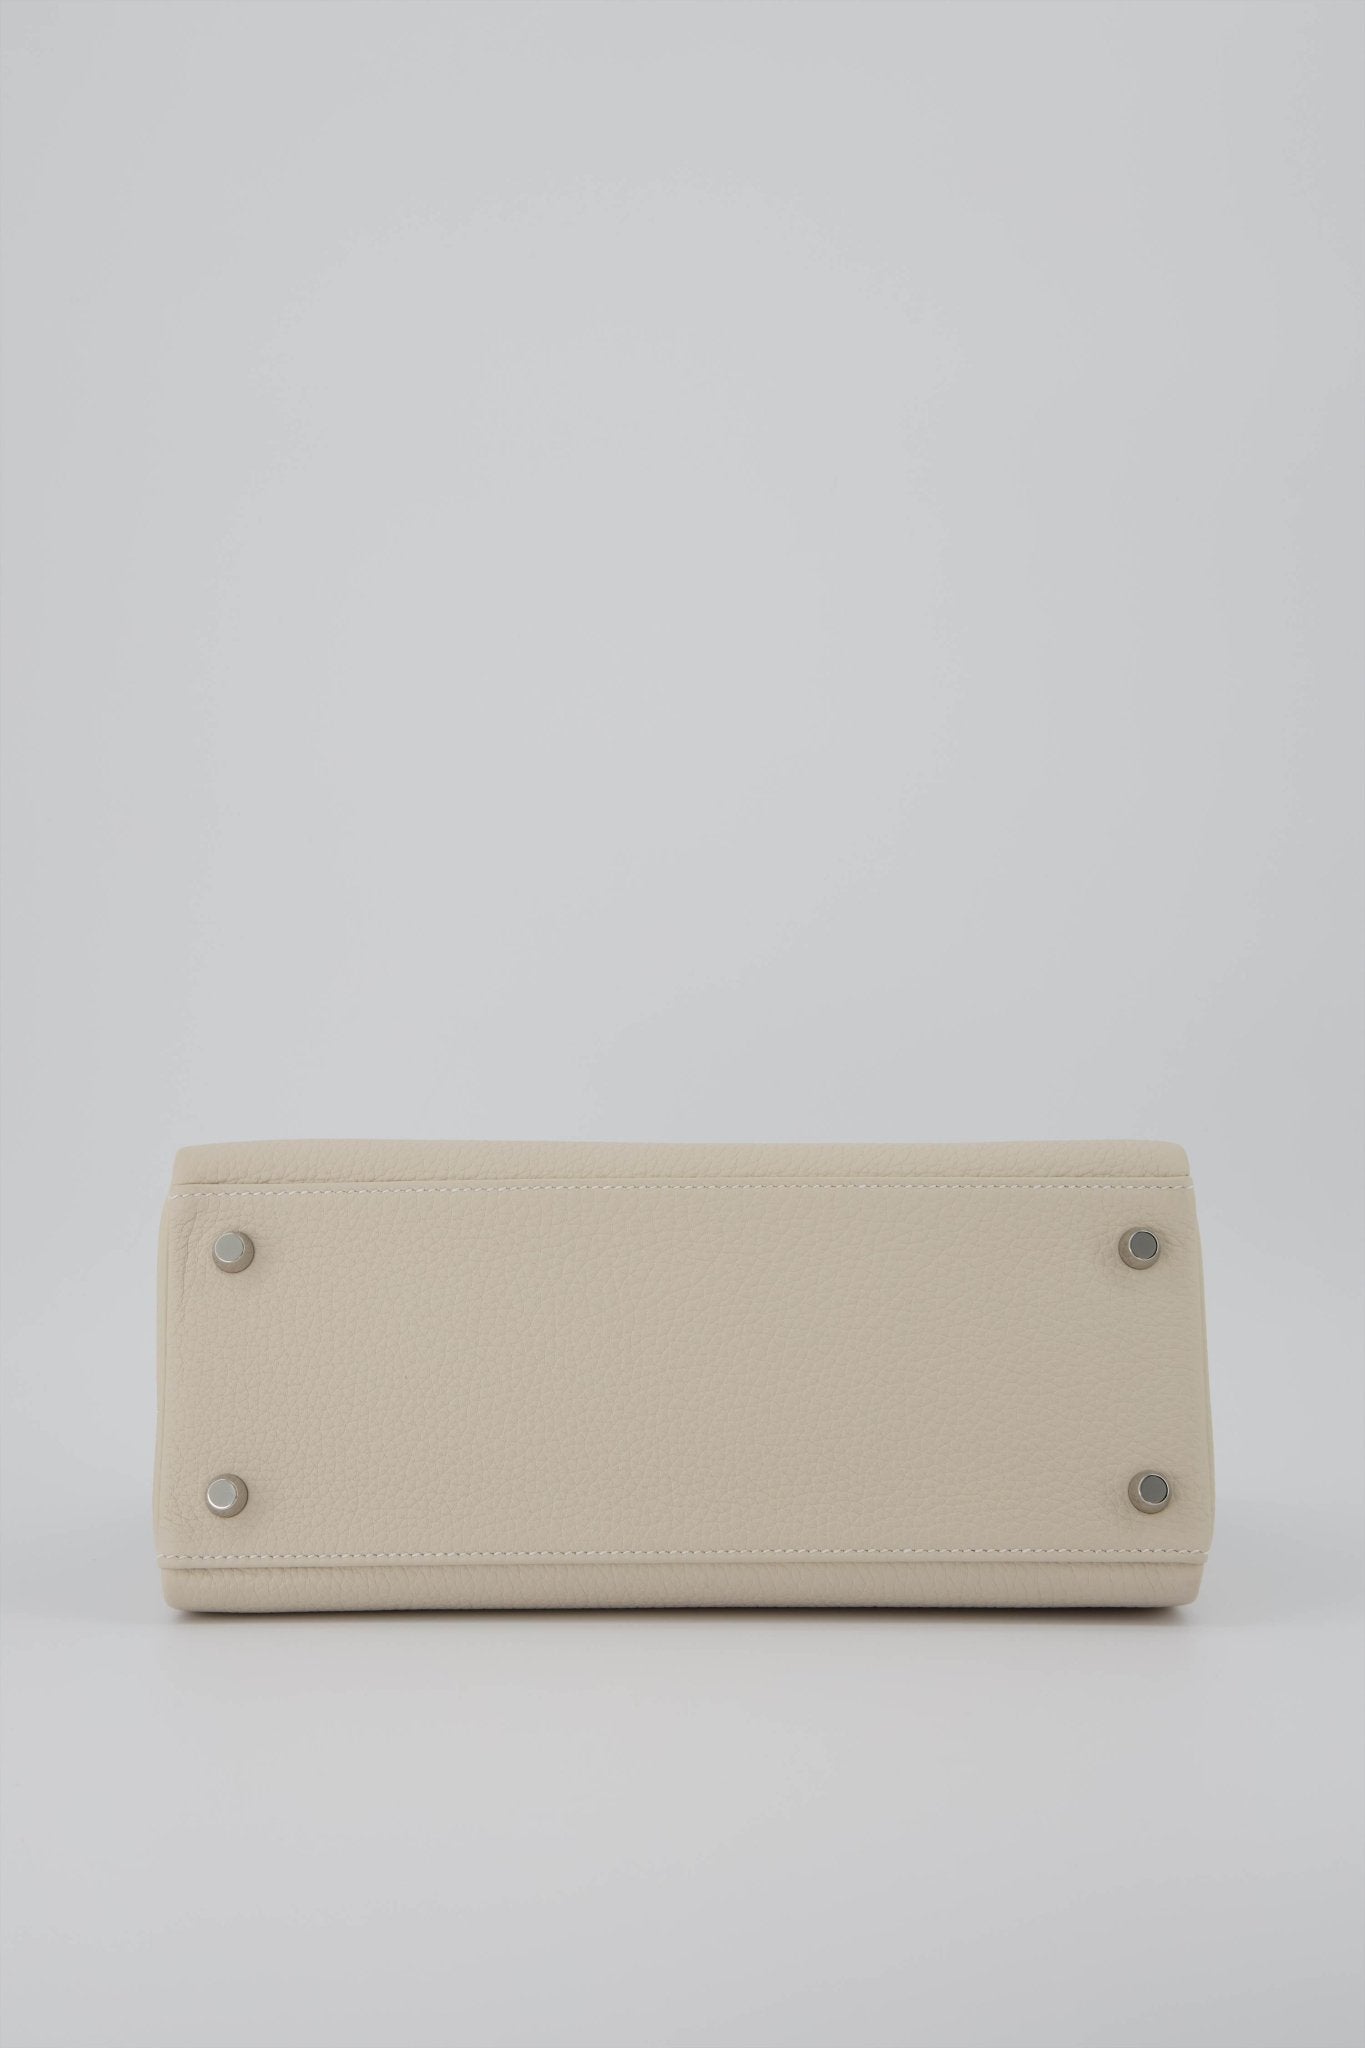 Hermes Kelly 28 Returnee Handbag Craie Togo Leather With Palladium Hardware